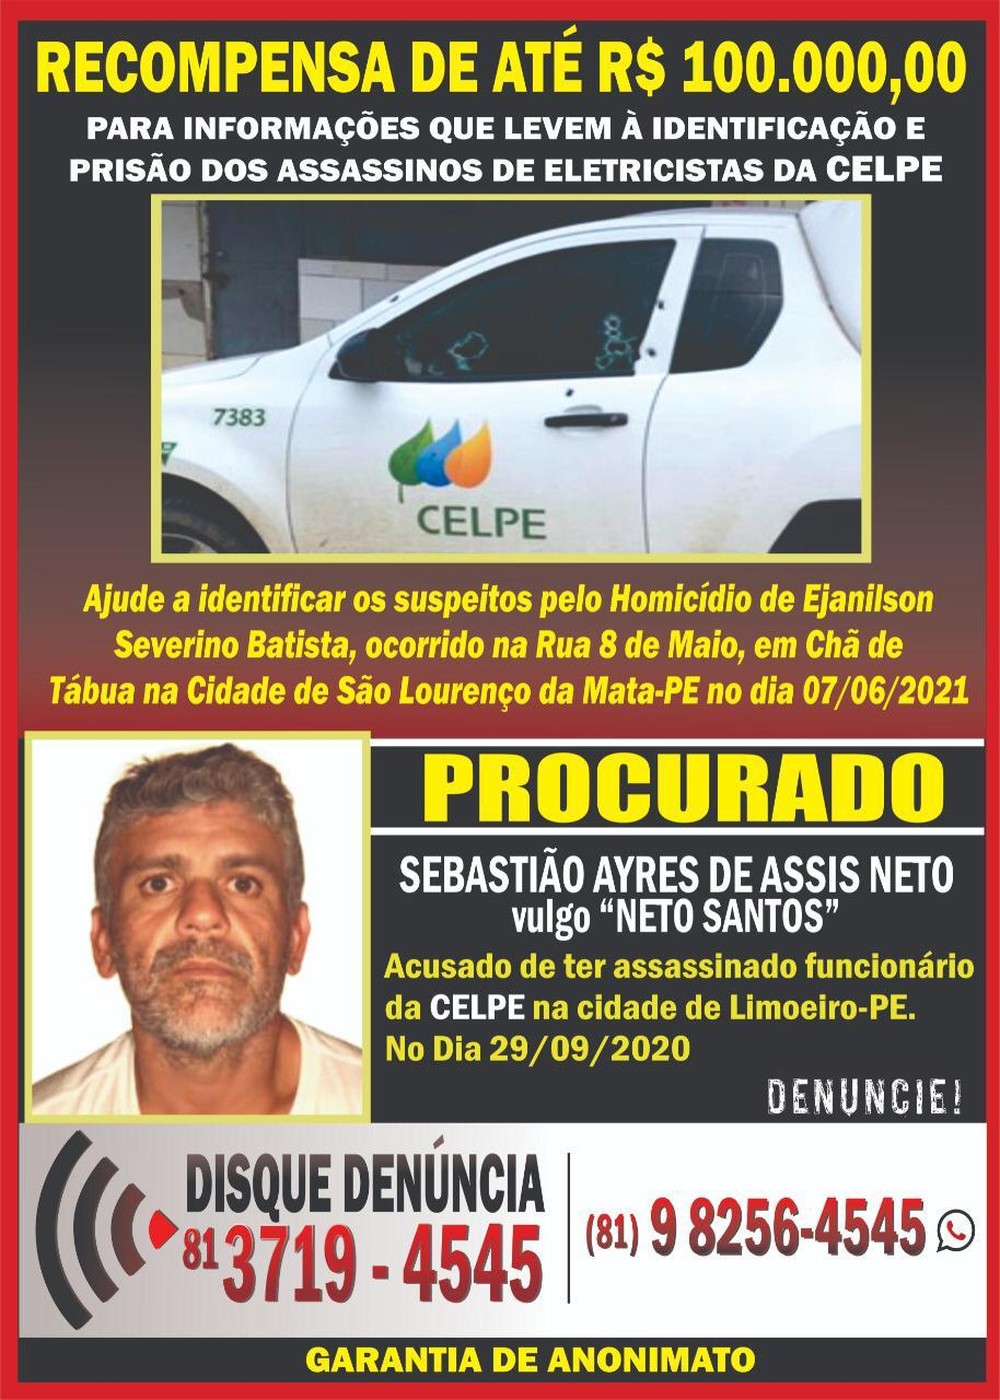 You are currently viewing Disque-denúncia e Celpe oferecem recompensa de até R$ 100 mil por informações sobre assassinos de eletricistas